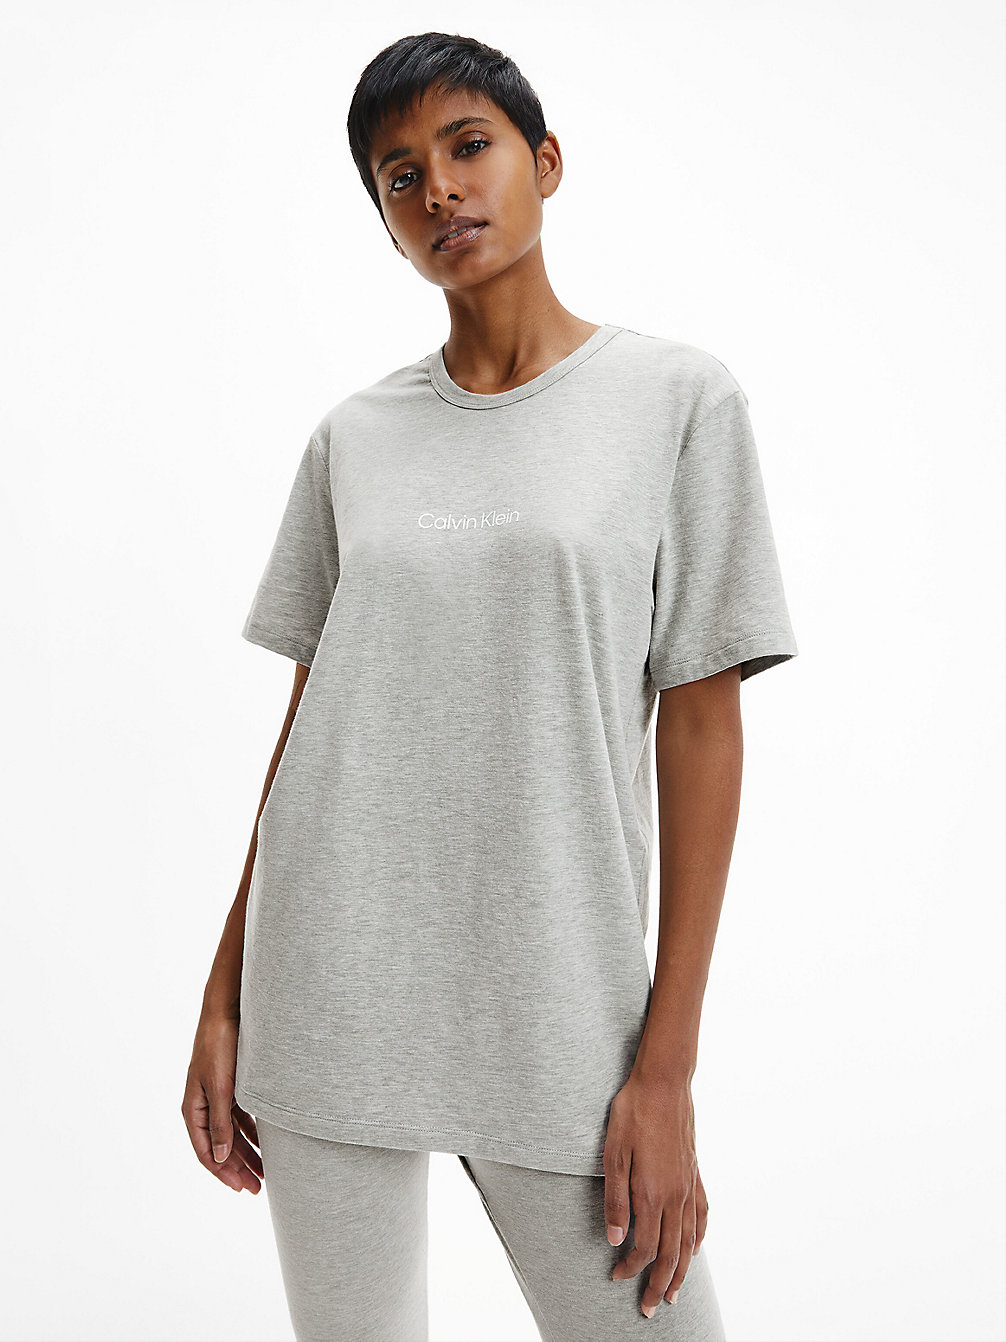 GREY HEATHER Lounge T-Shirt - Modern Structure undefined women Calvin Klein